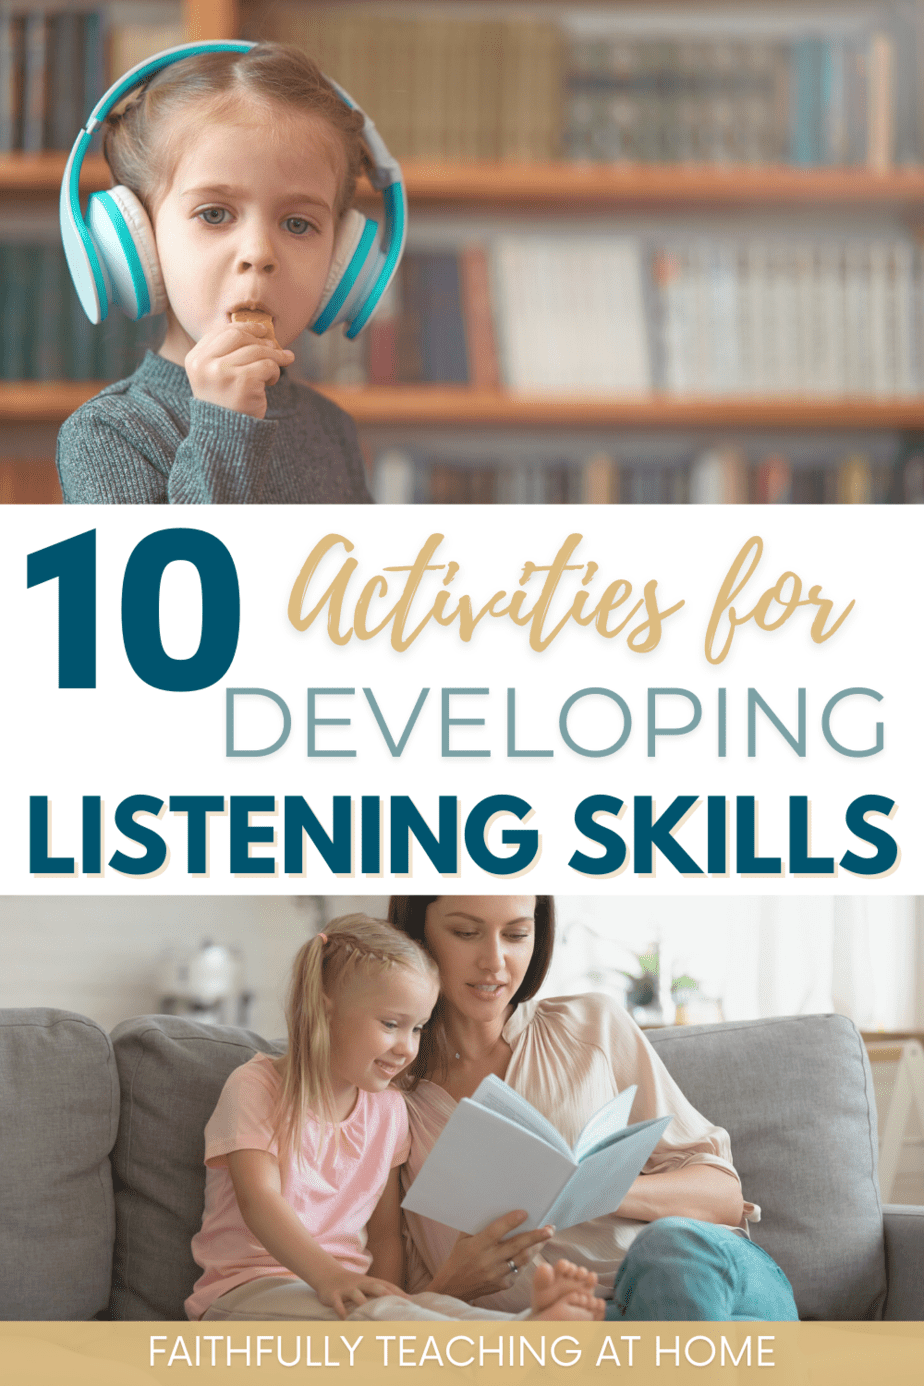 Activities for Developing Listening Skills in Preschoolers